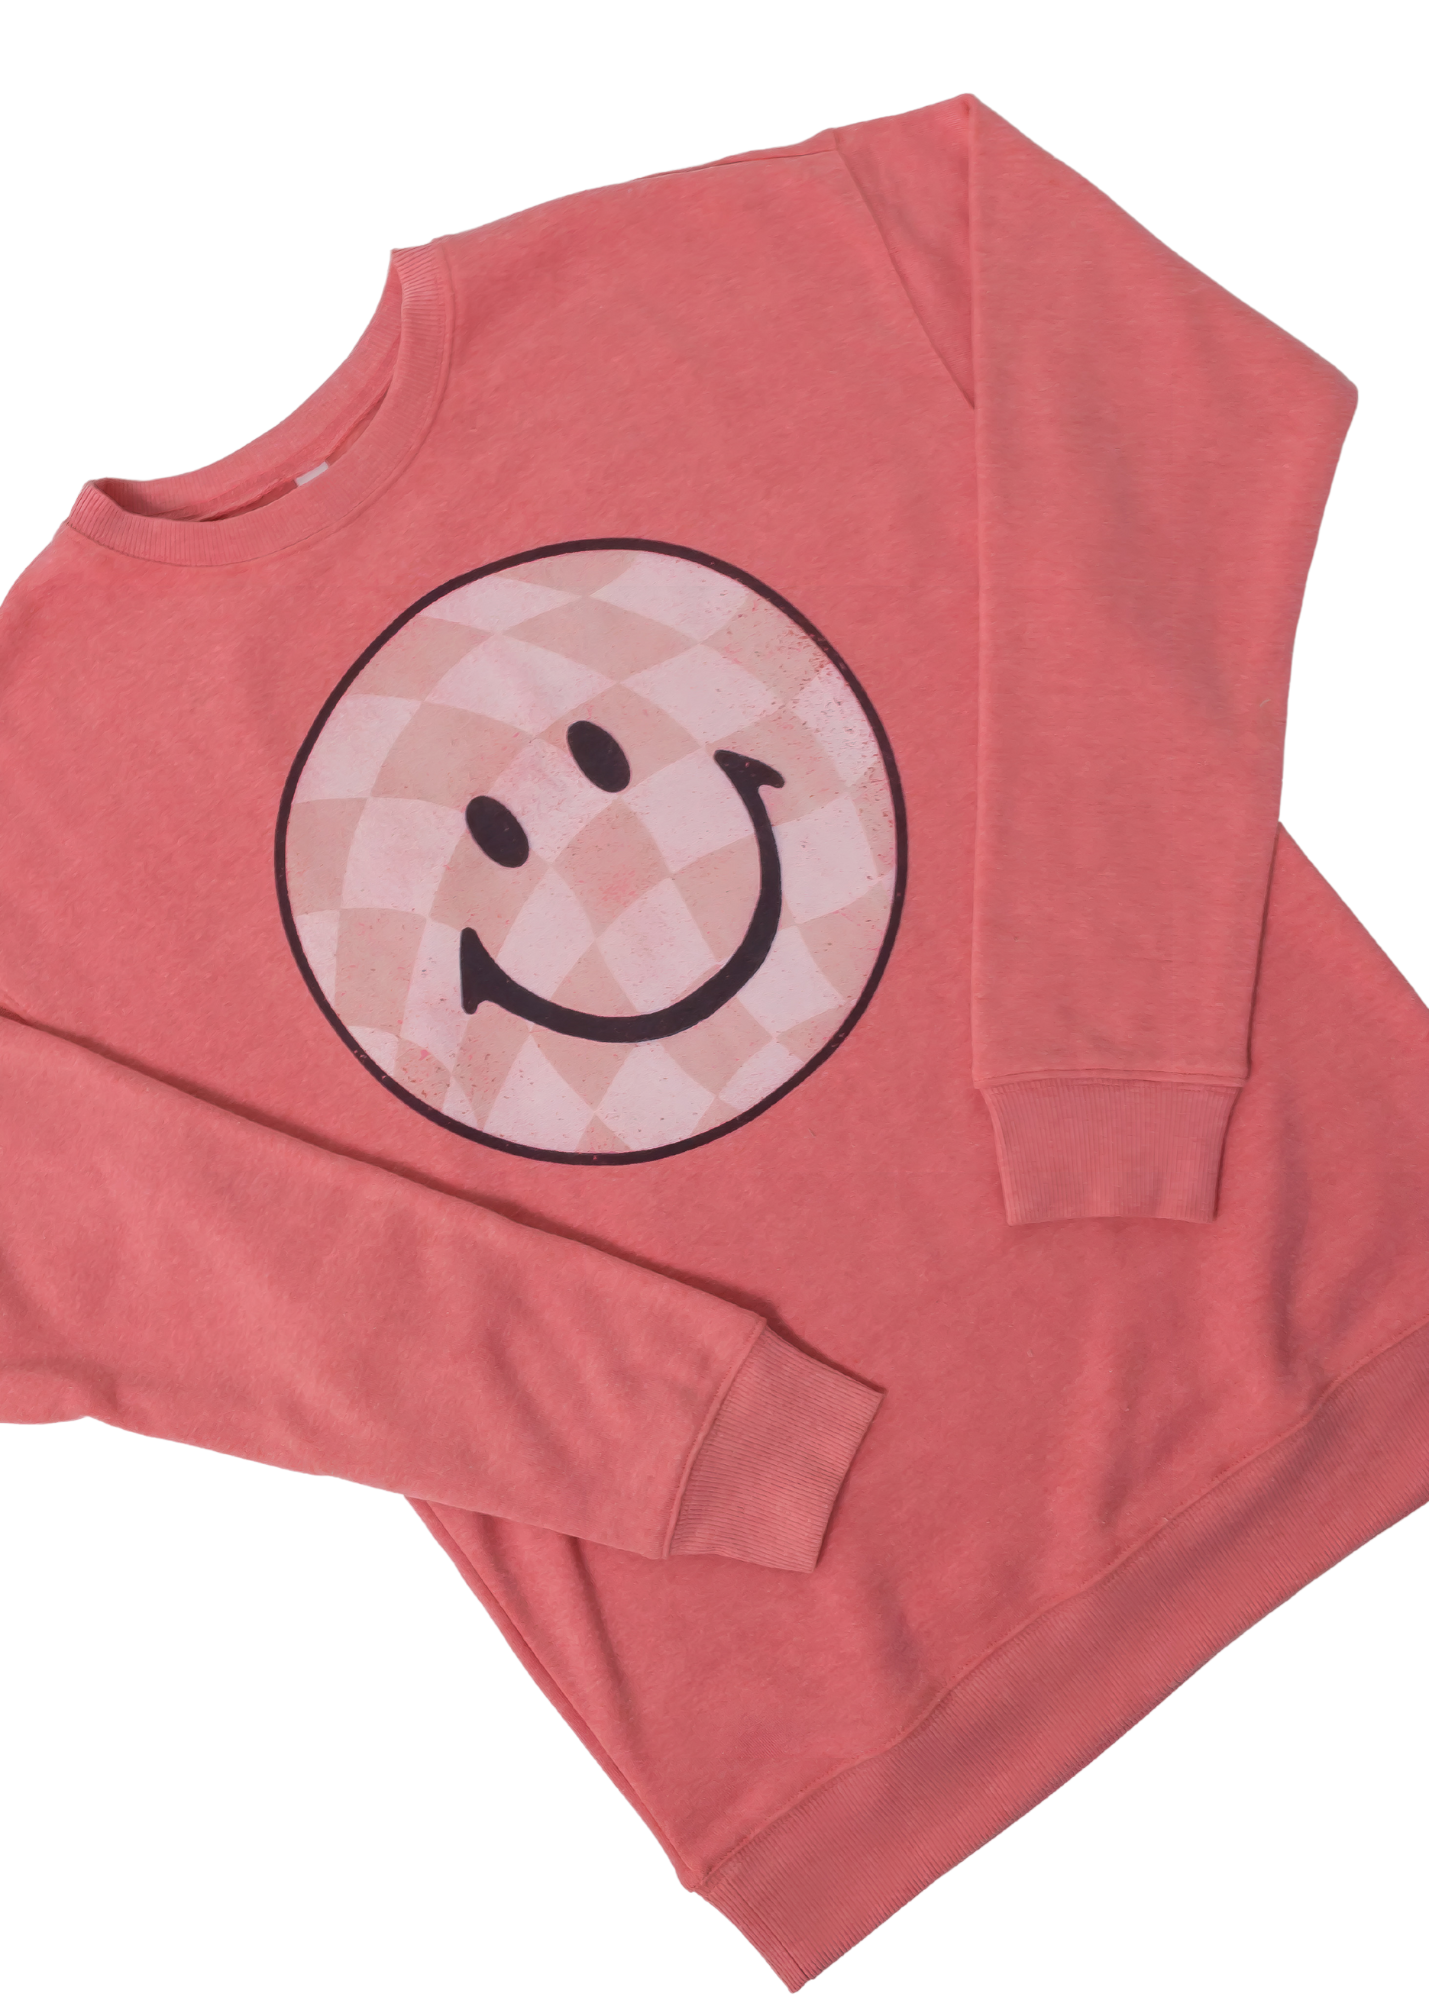 Checkerboard Smiley Face Graphic Sweatshirt